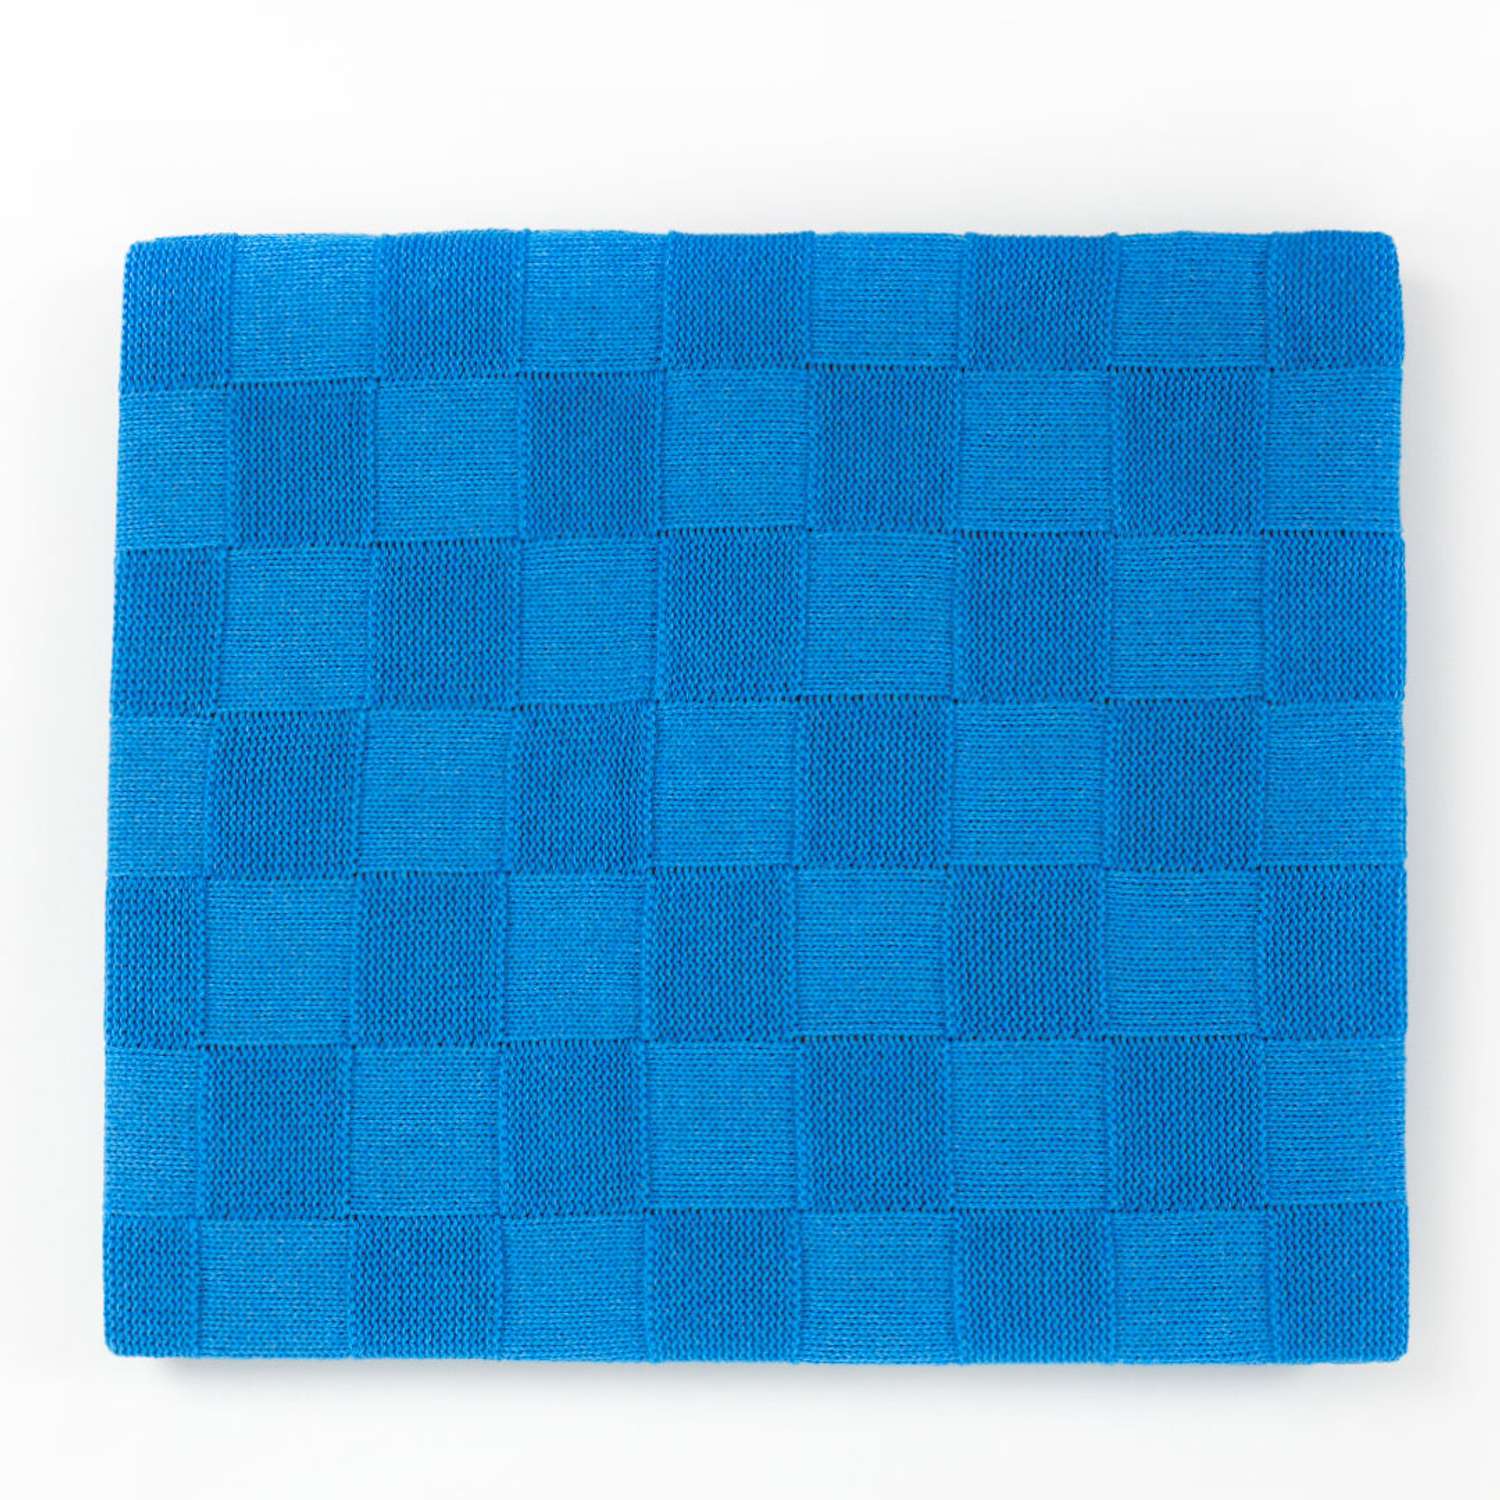 Плед-покрывало детский вязаный WARM WHIFF D-08 голубой конверт на выписку одеяло в коляску в кроватку на лето 90x110 - фото 1